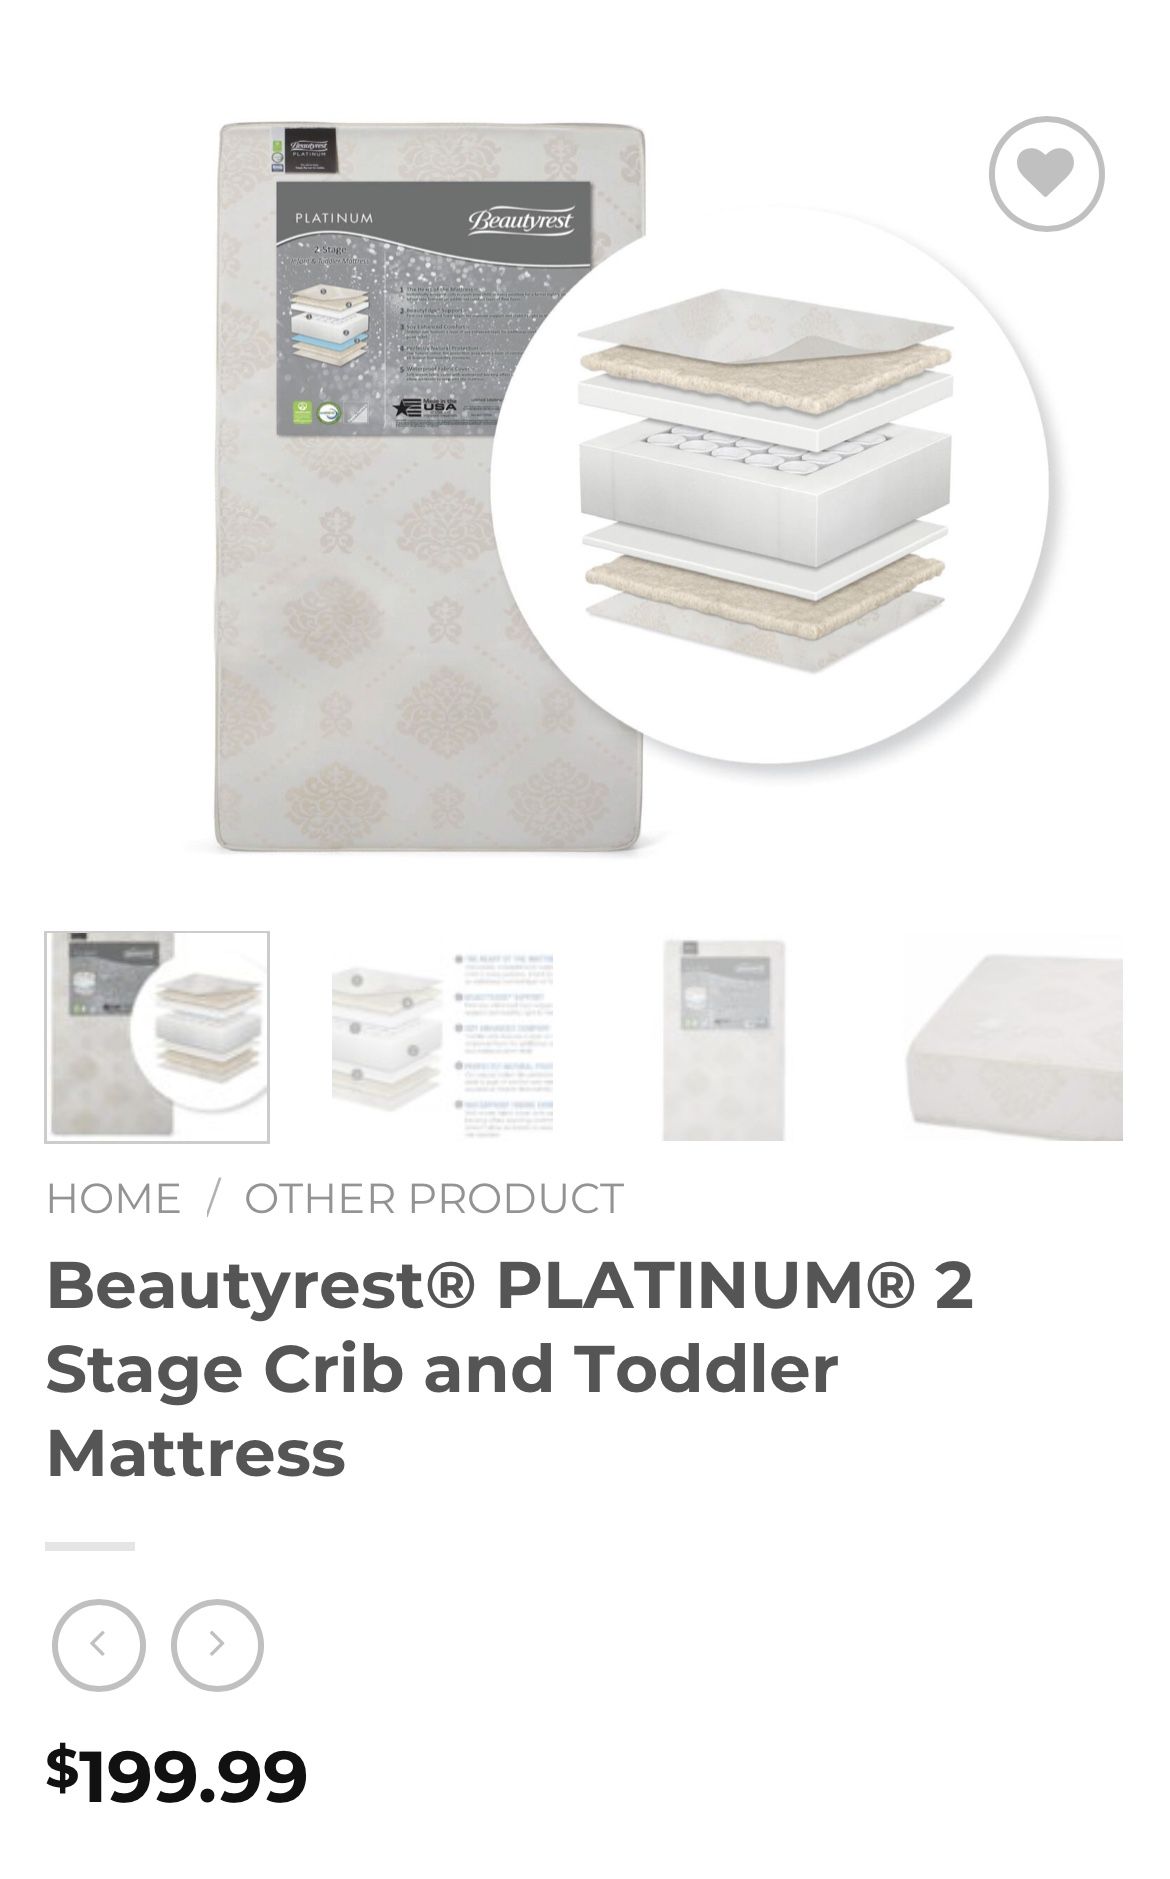 Beautyrest platinum Crib Mattress